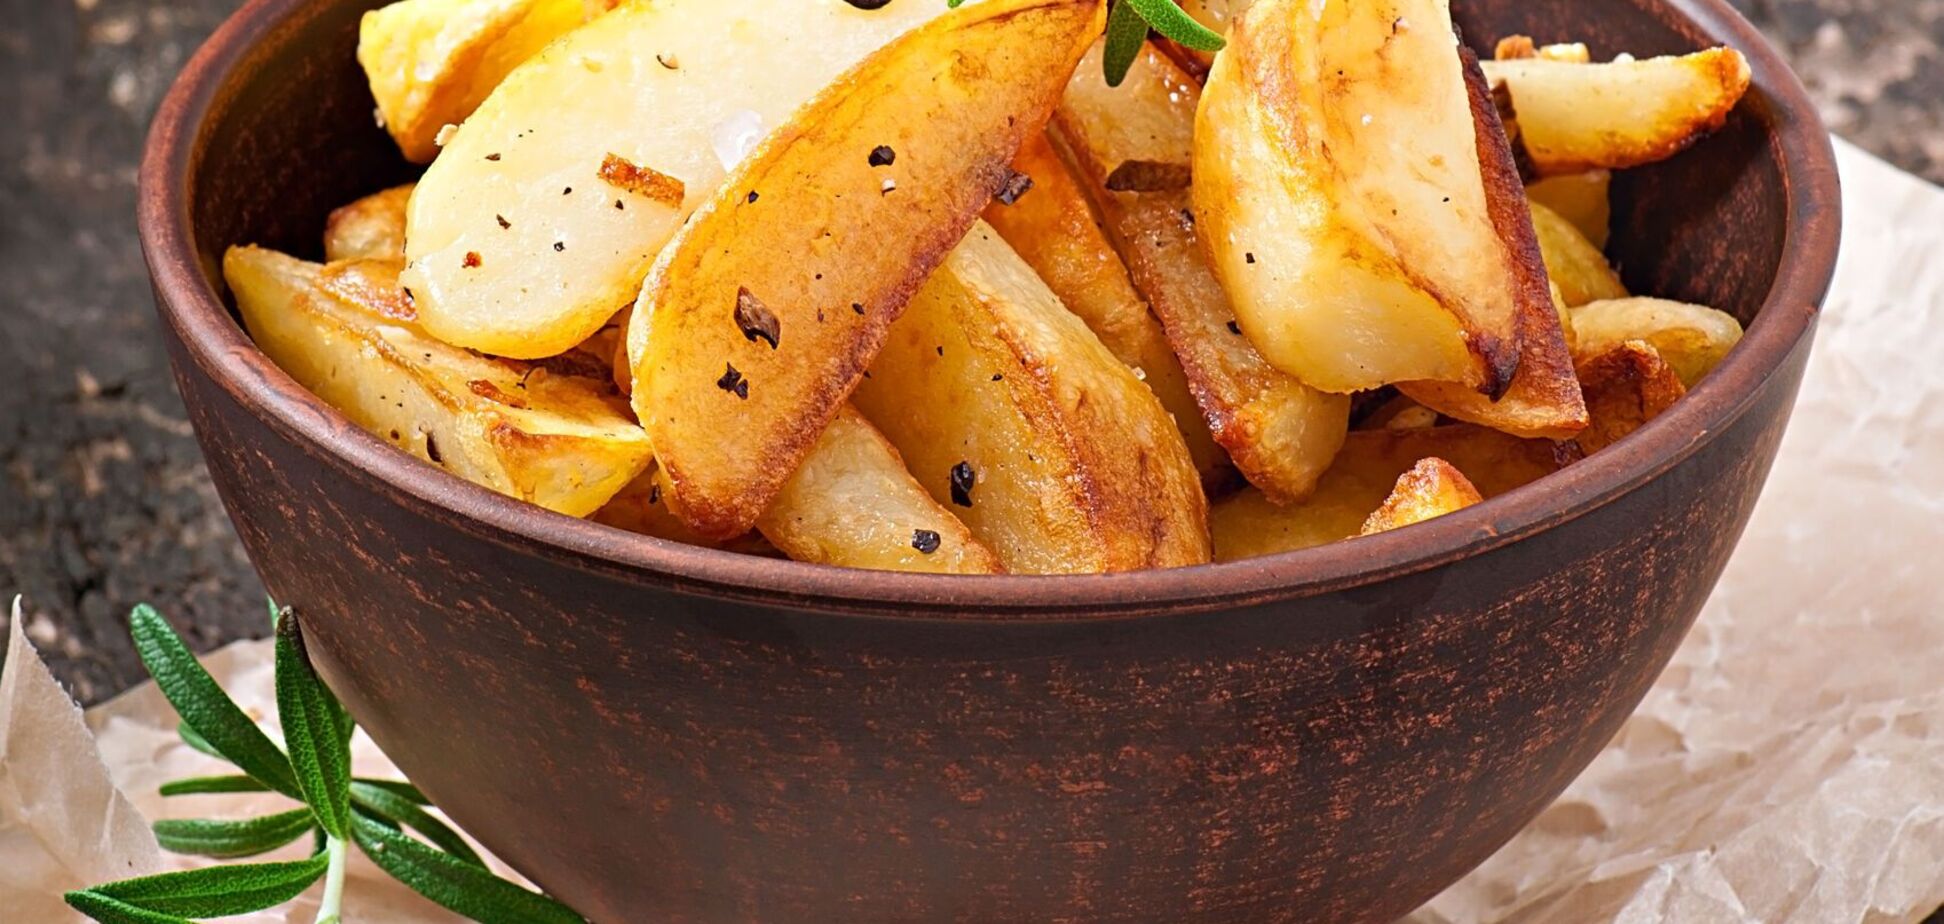 Додайте всього один інгредієнт: картопля по-селянськи з хрусткою скоринкою за 25 хвилин